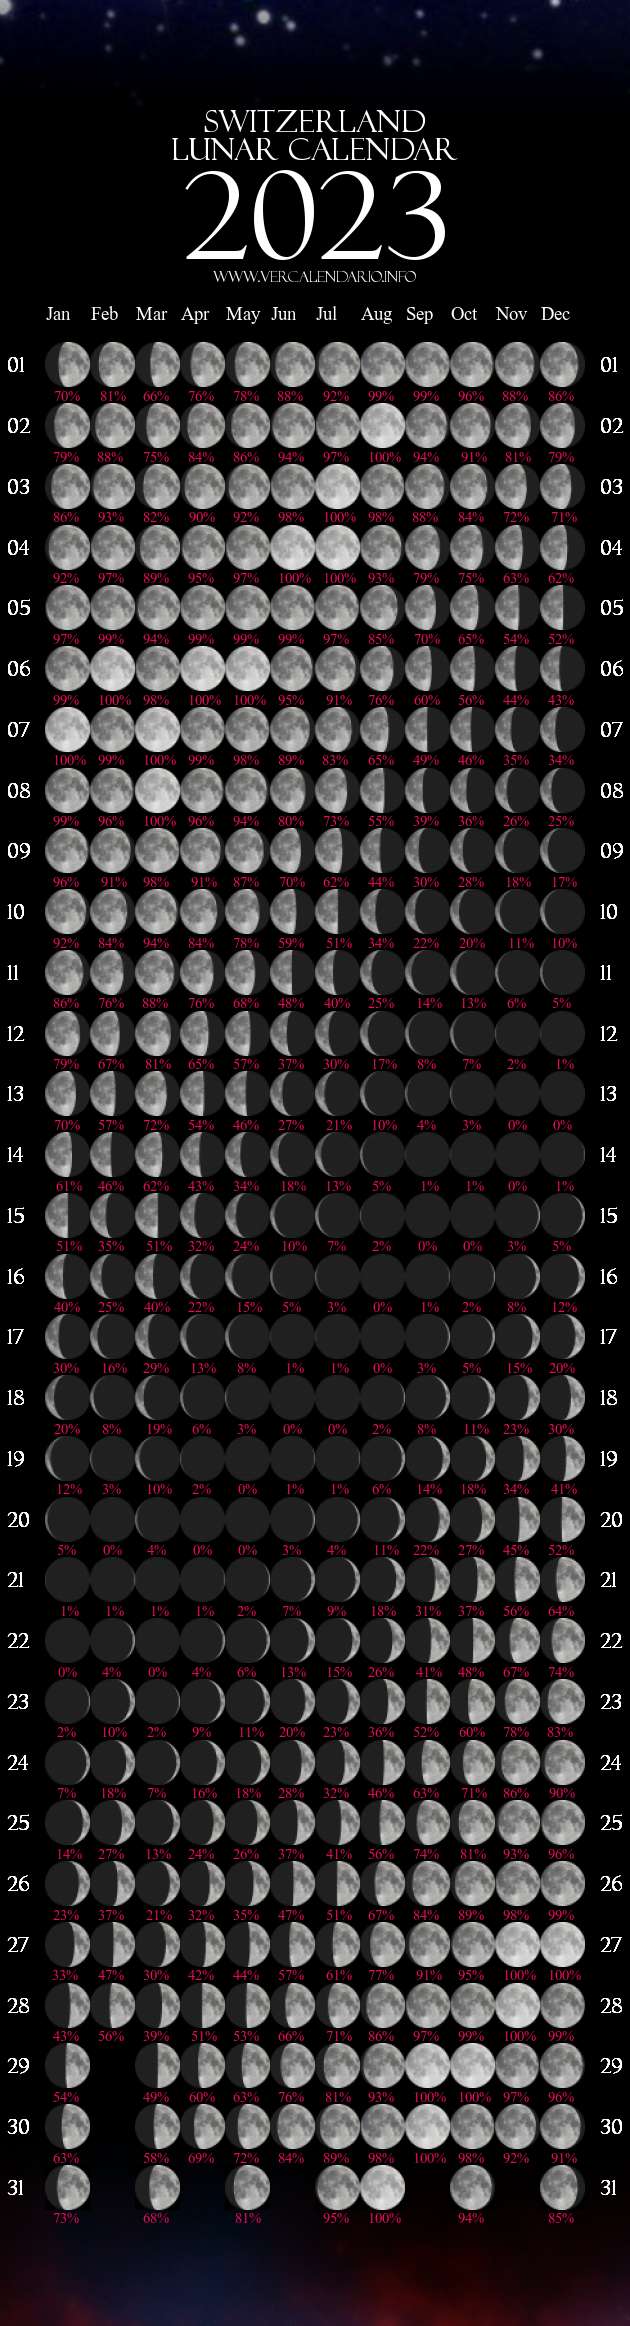 Lunar Calendar 2023 (Switzerland)